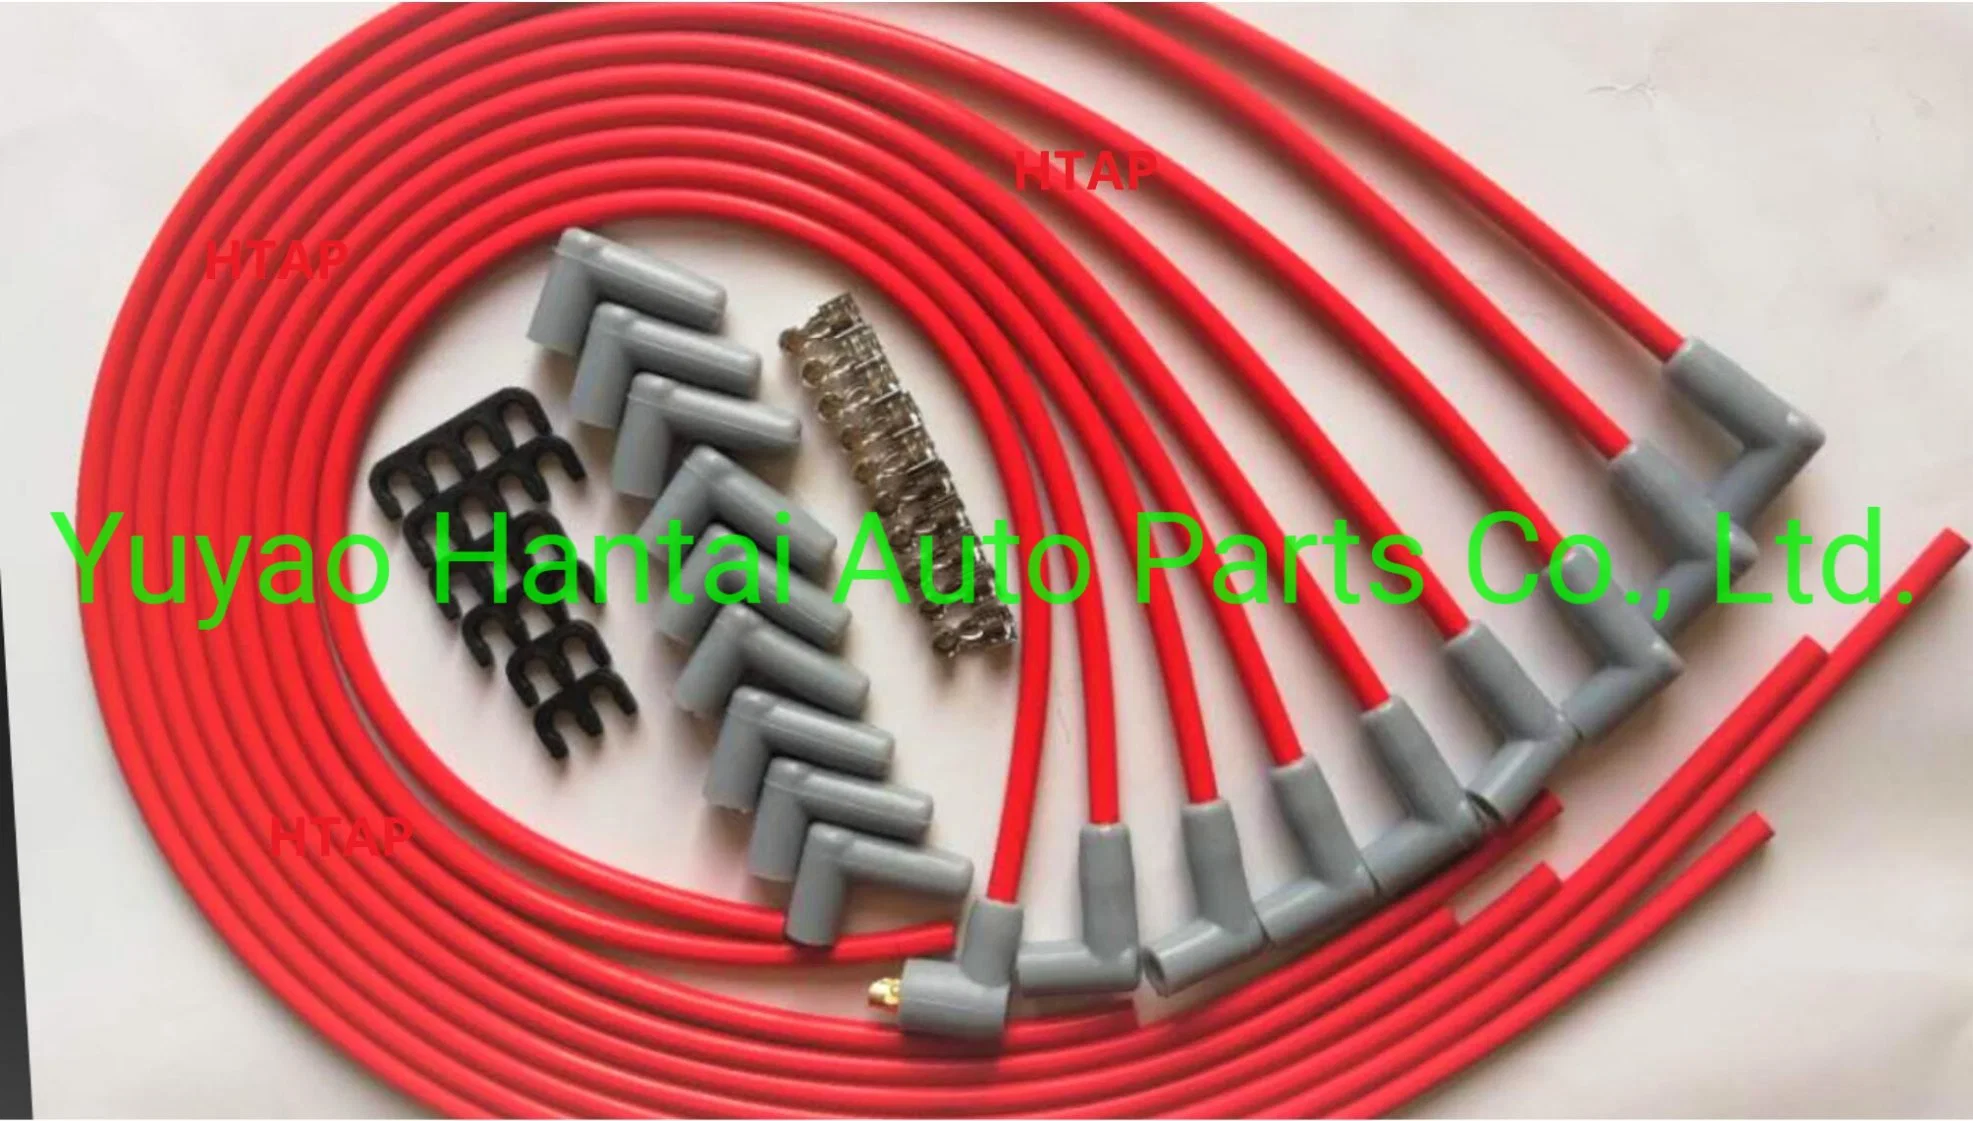 Spark Plug Wire/Spark Plug Cable for European Car